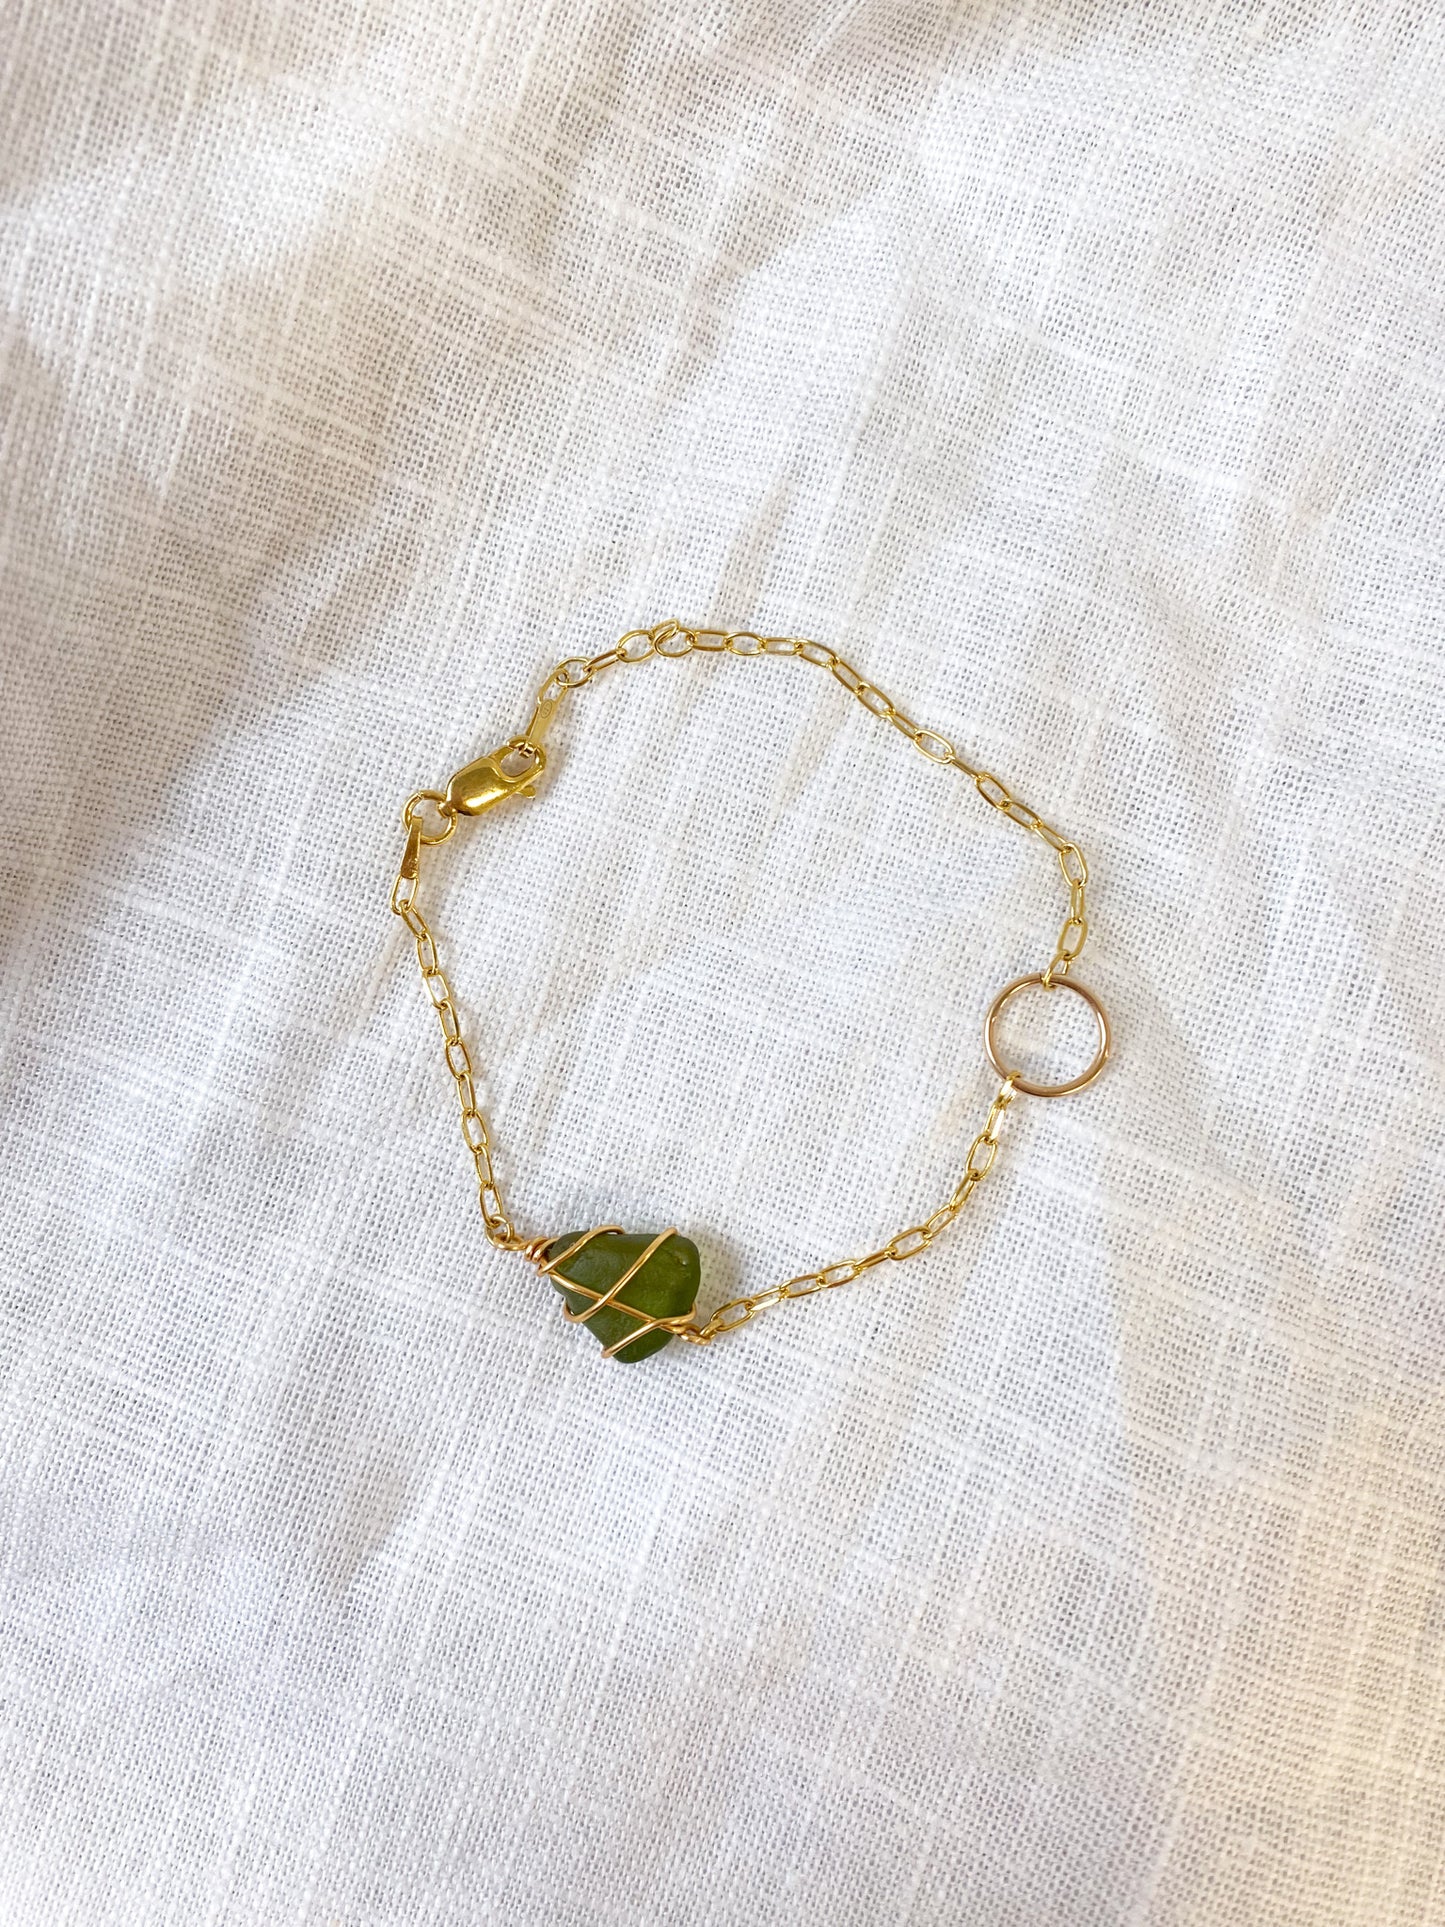 Eilidh Bracelet in Gold & Dark Green